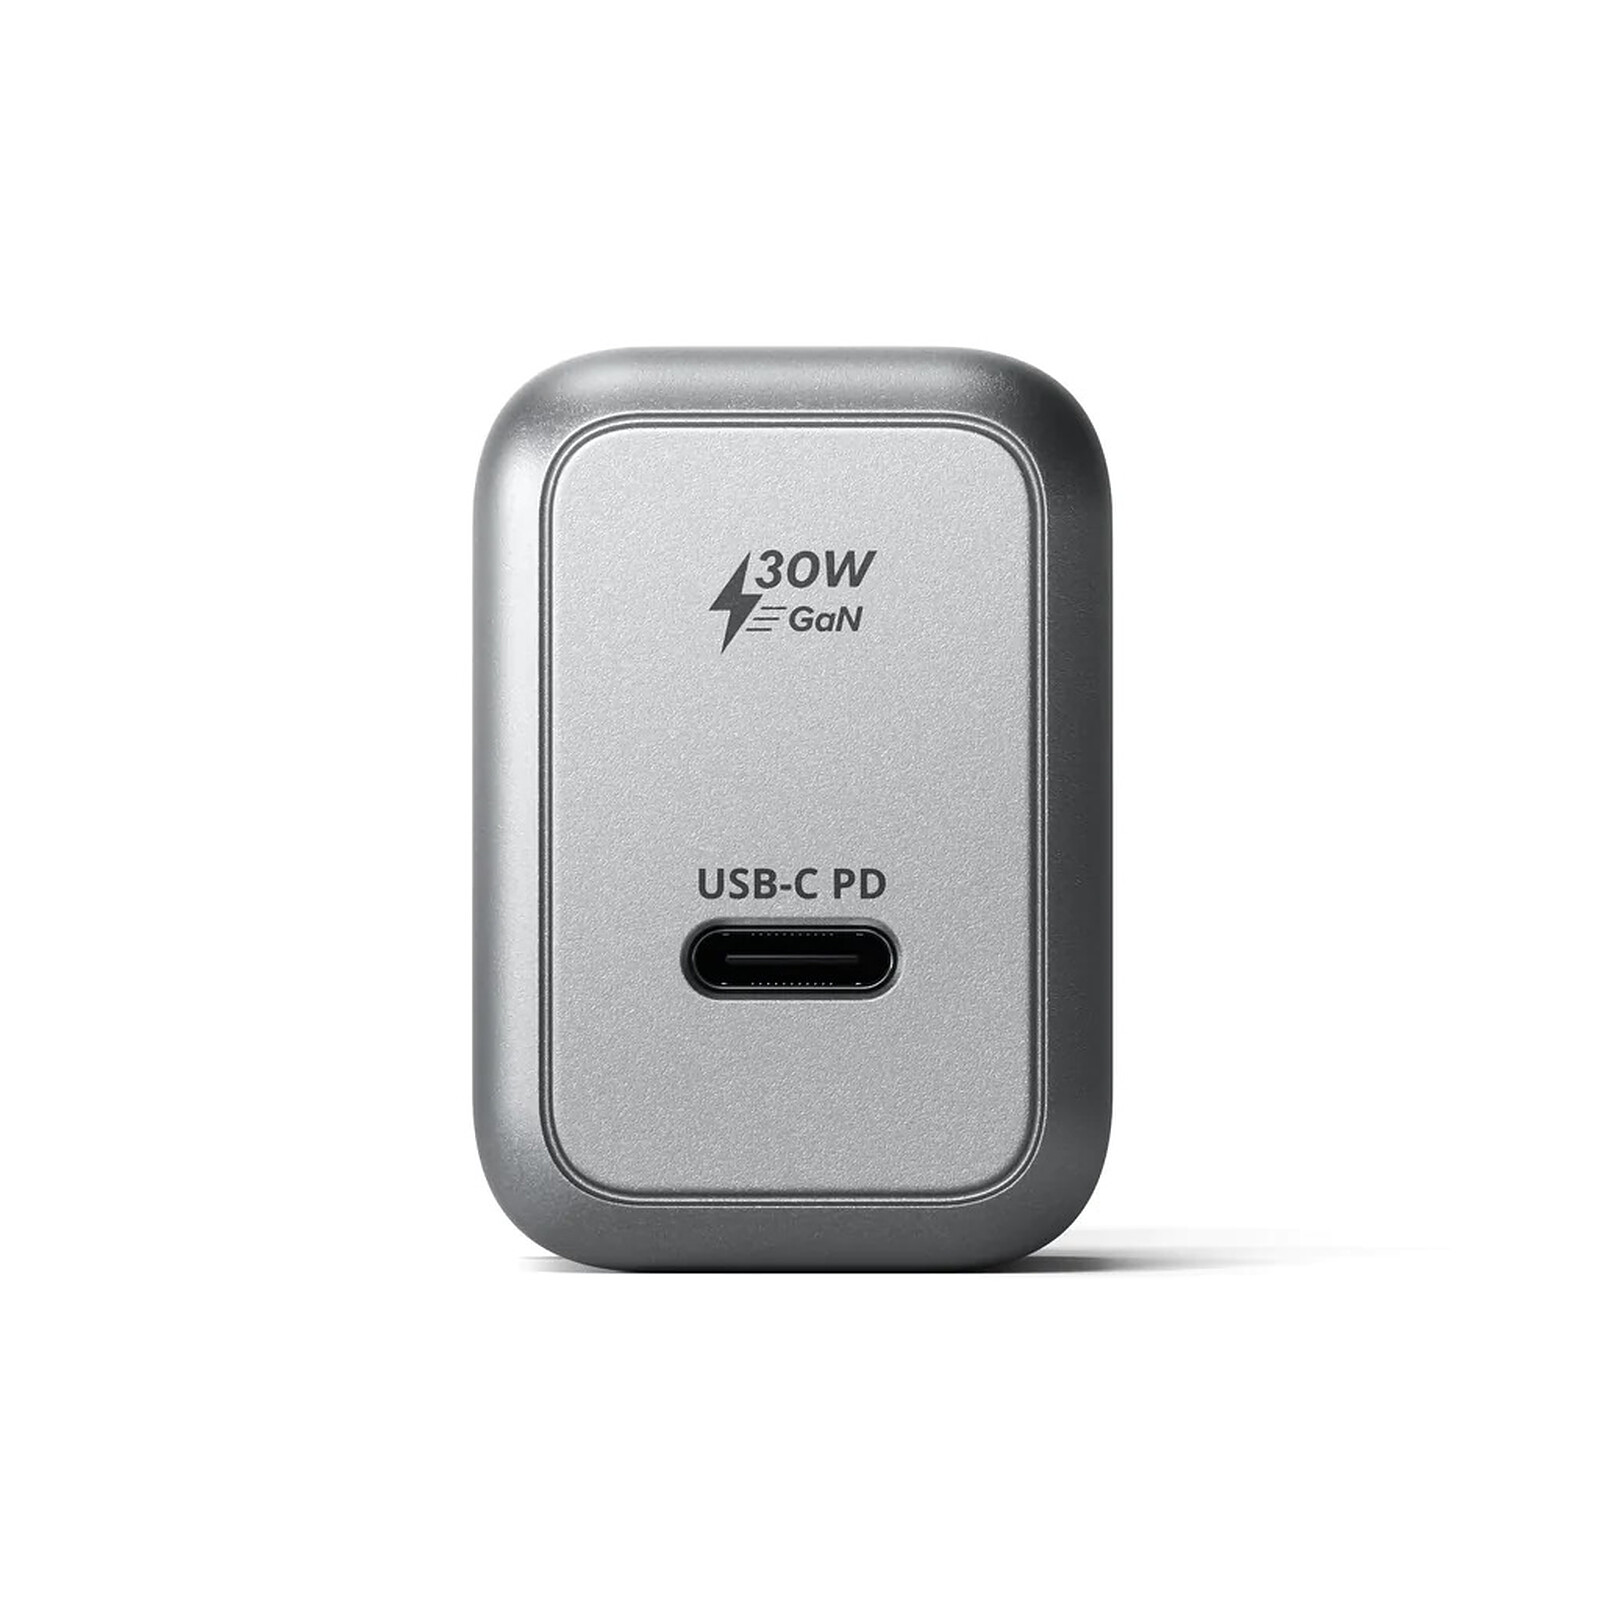  Belkin Cable Thunderbolt 3 (USB-C a USB-C) – Cable USB C para  MacBook Air, Galaxy, Apple TV y más, carga rápida de hasta 100 W, hecho  para dispositivos USB-C, Thunderbolt 3